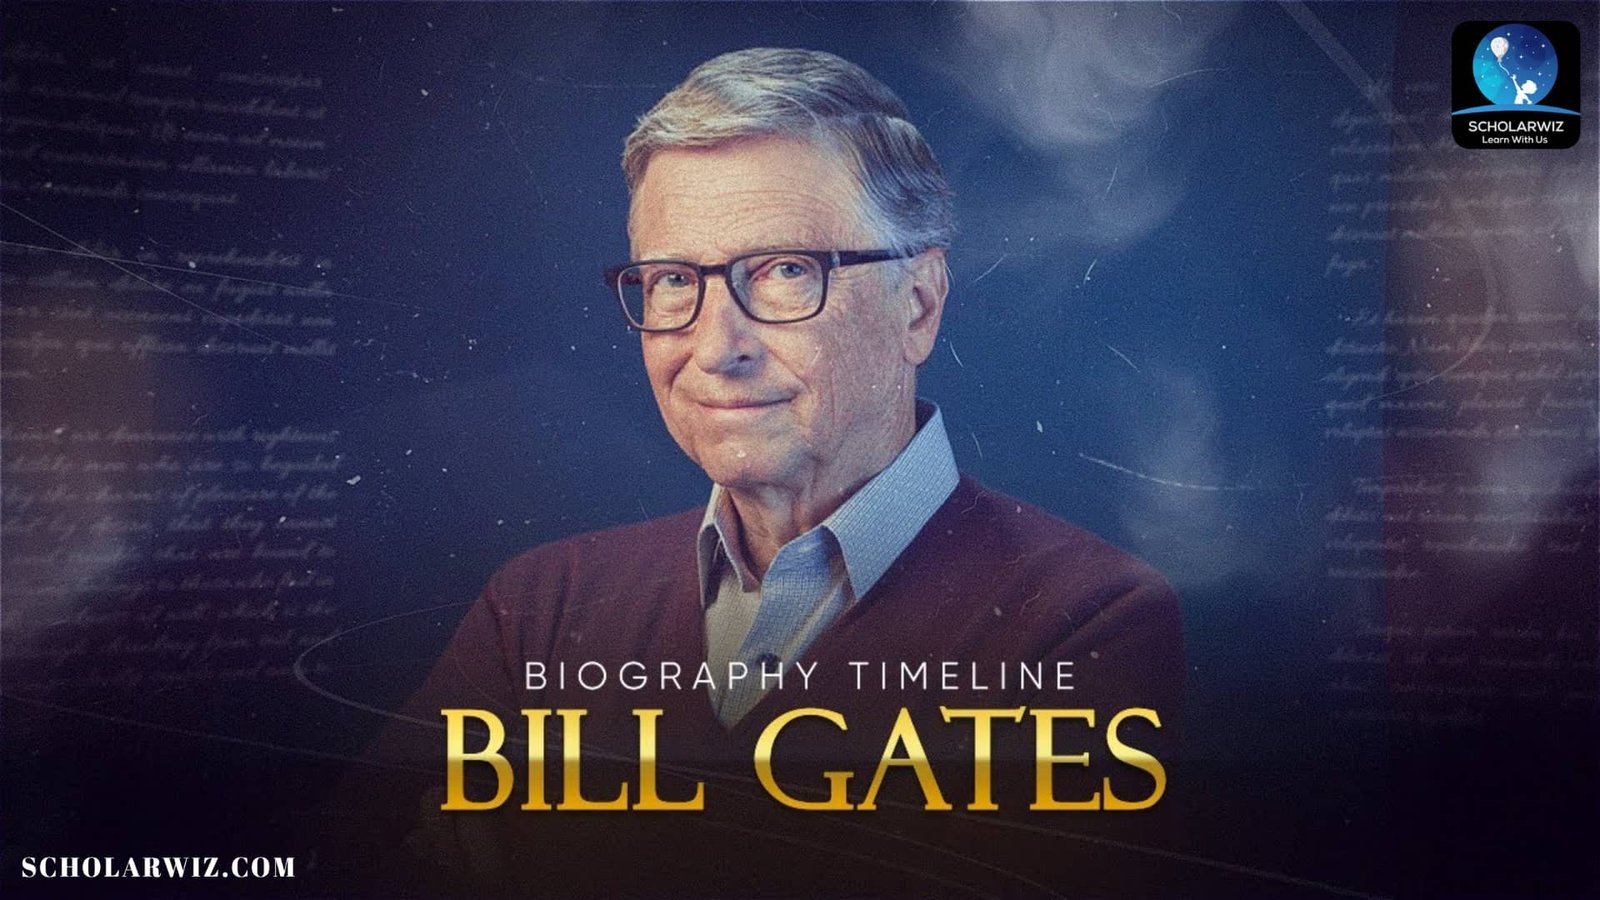 bill gates a biography pdf